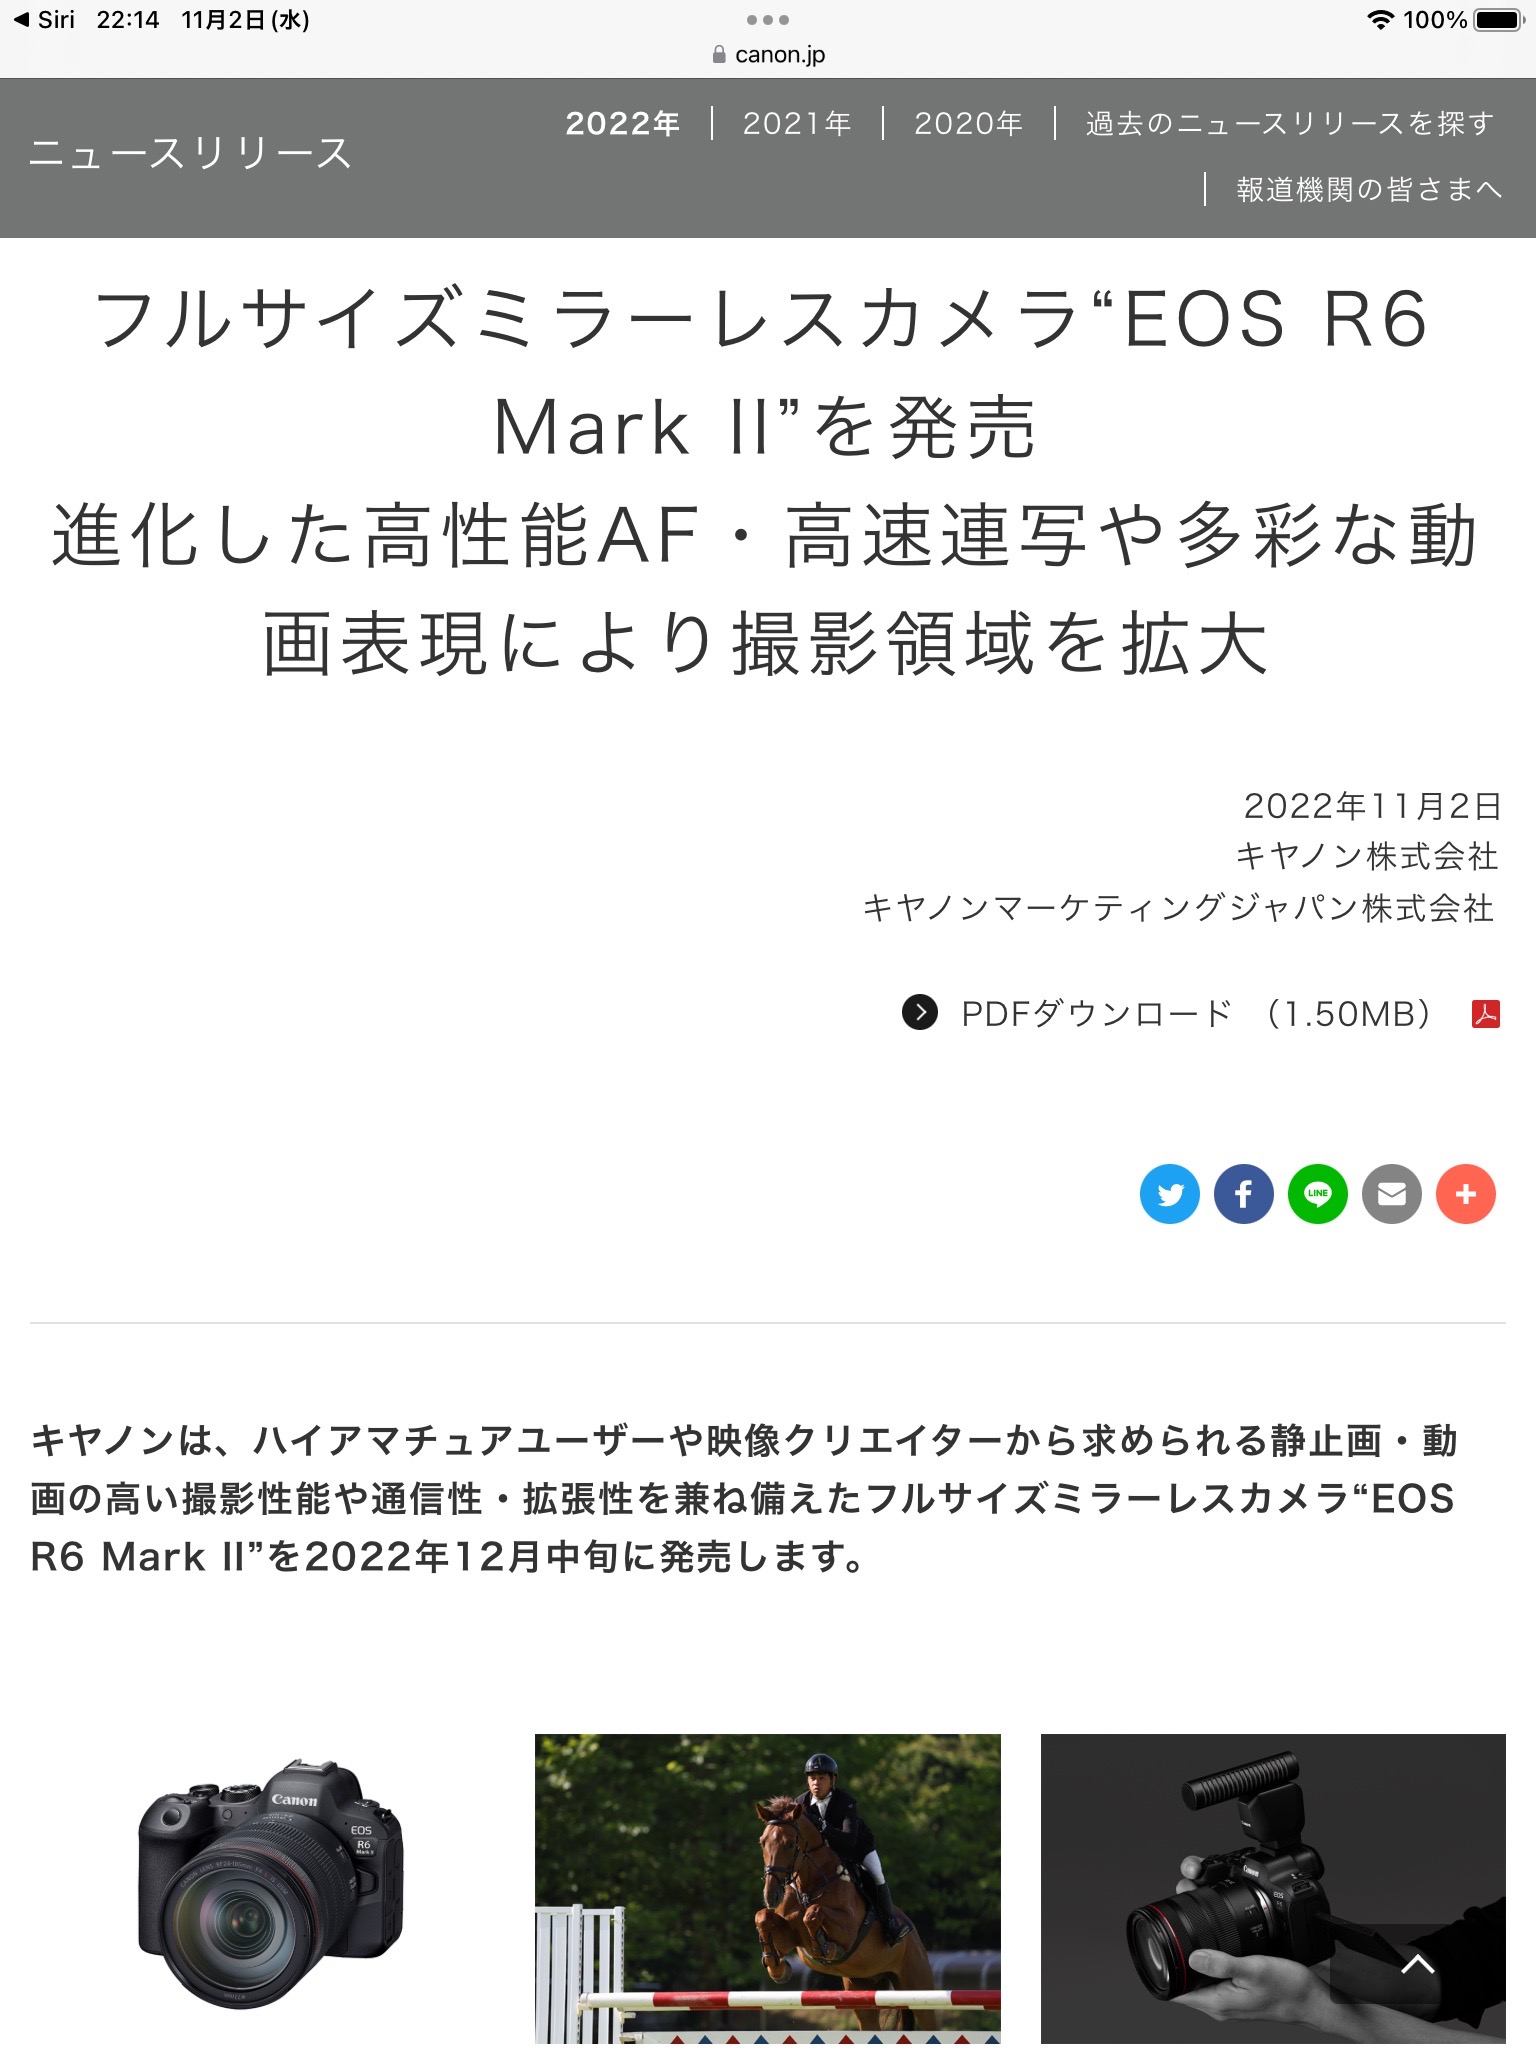 「EOS R6 Mark Ⅱ」を正式発表